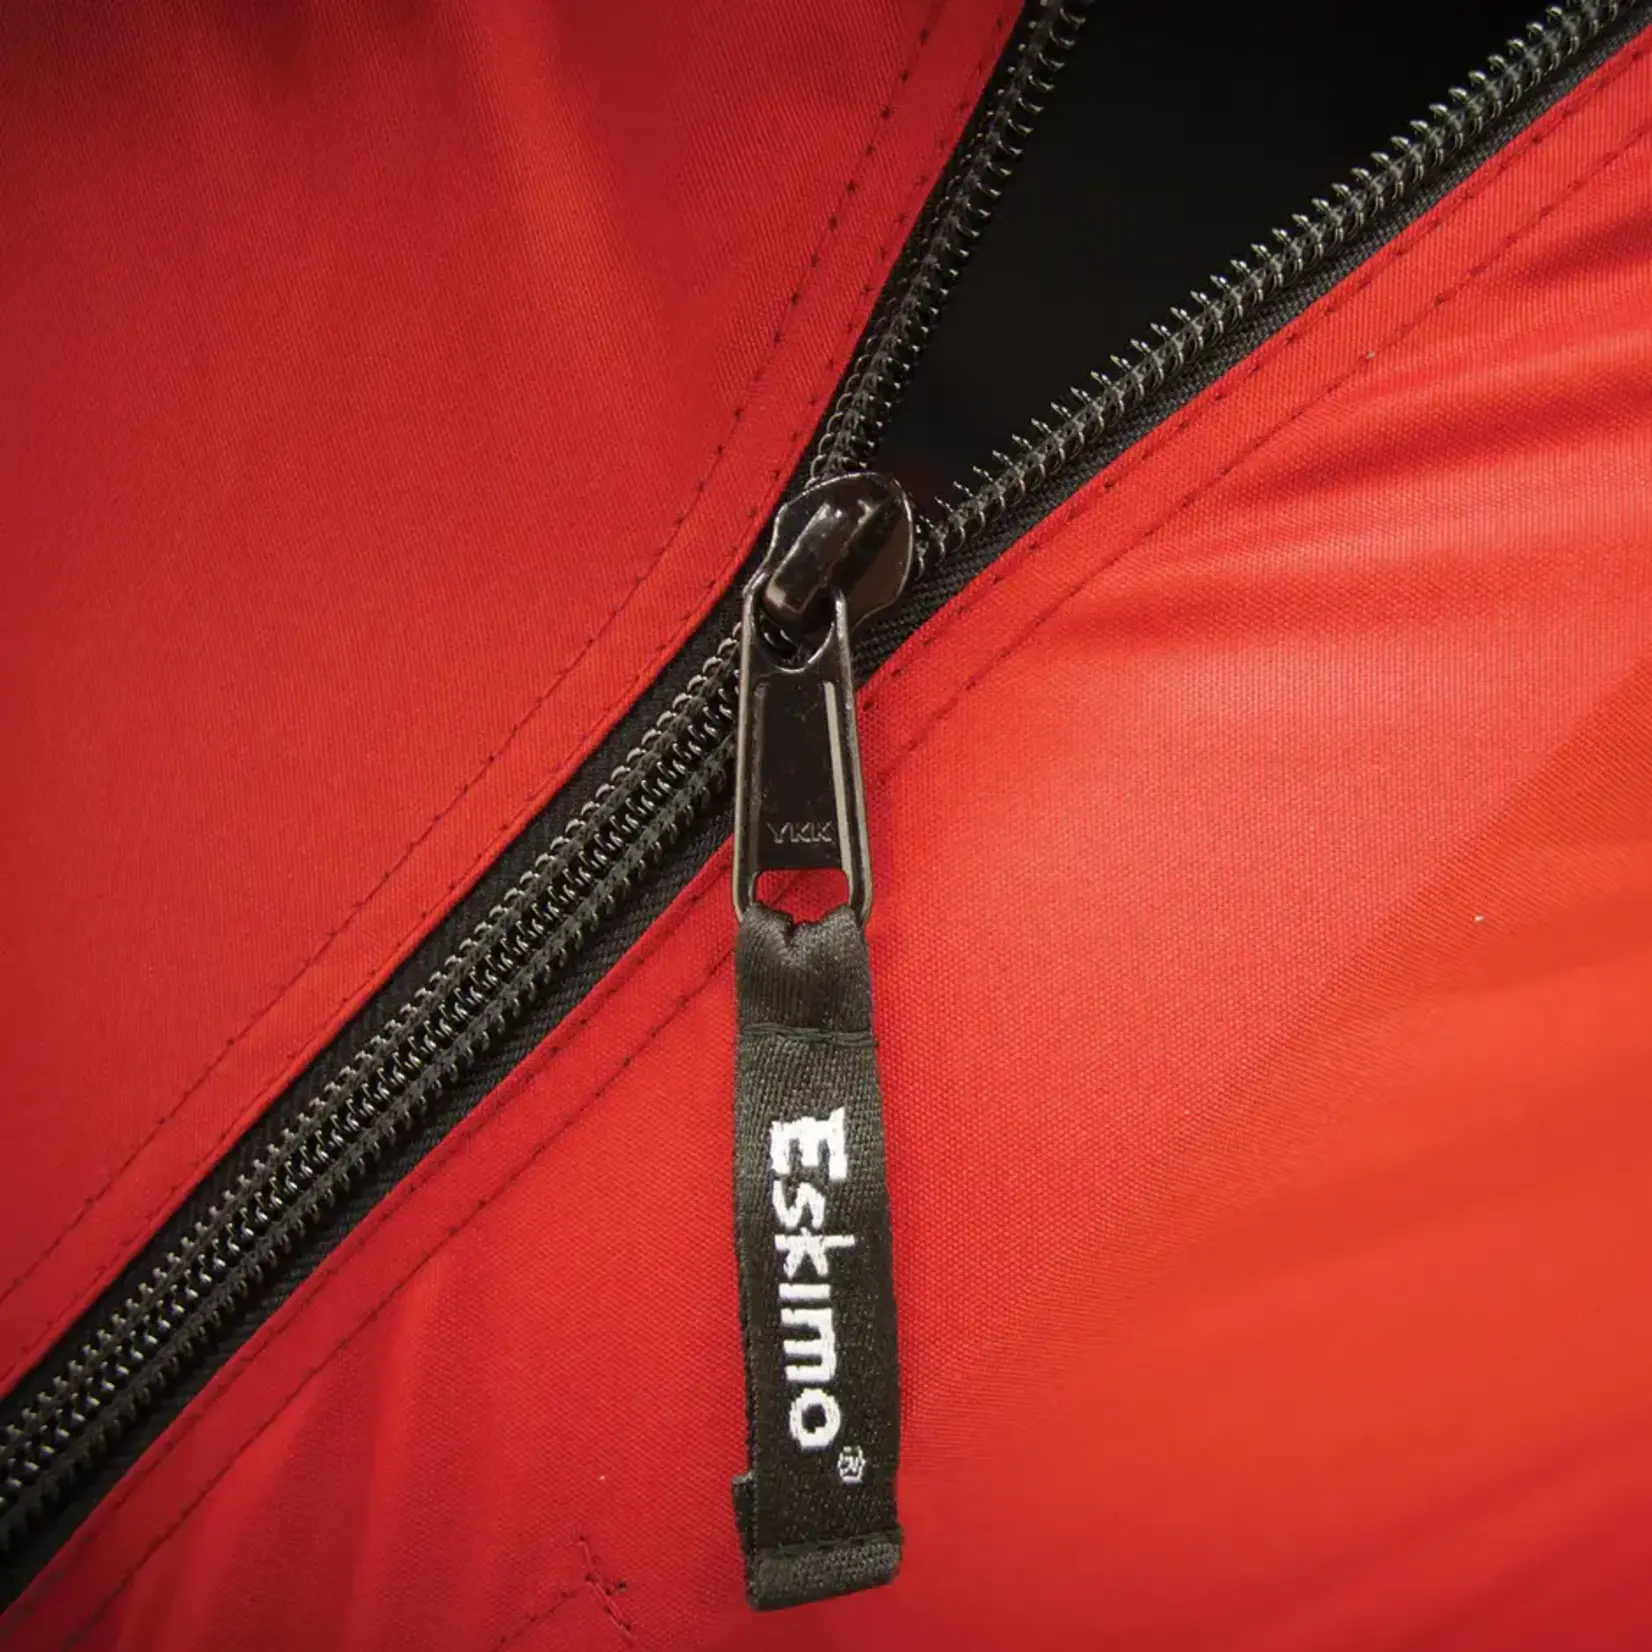 ESKIMO Tente De Pêche Sur Glace Eskimo Quickfish3